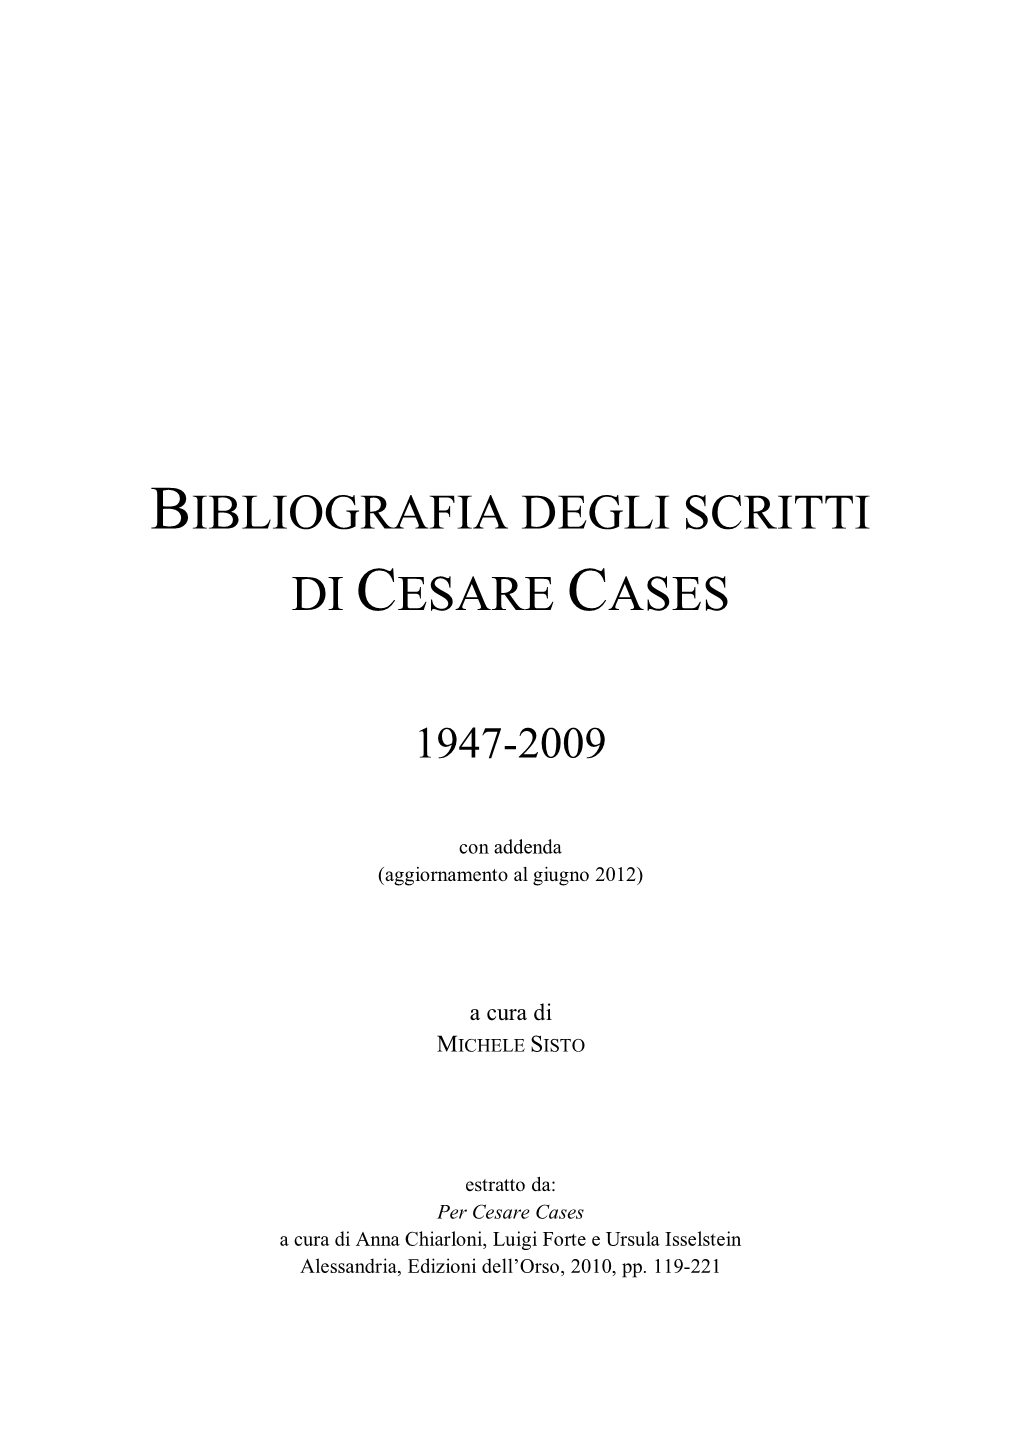 Cesare Cases